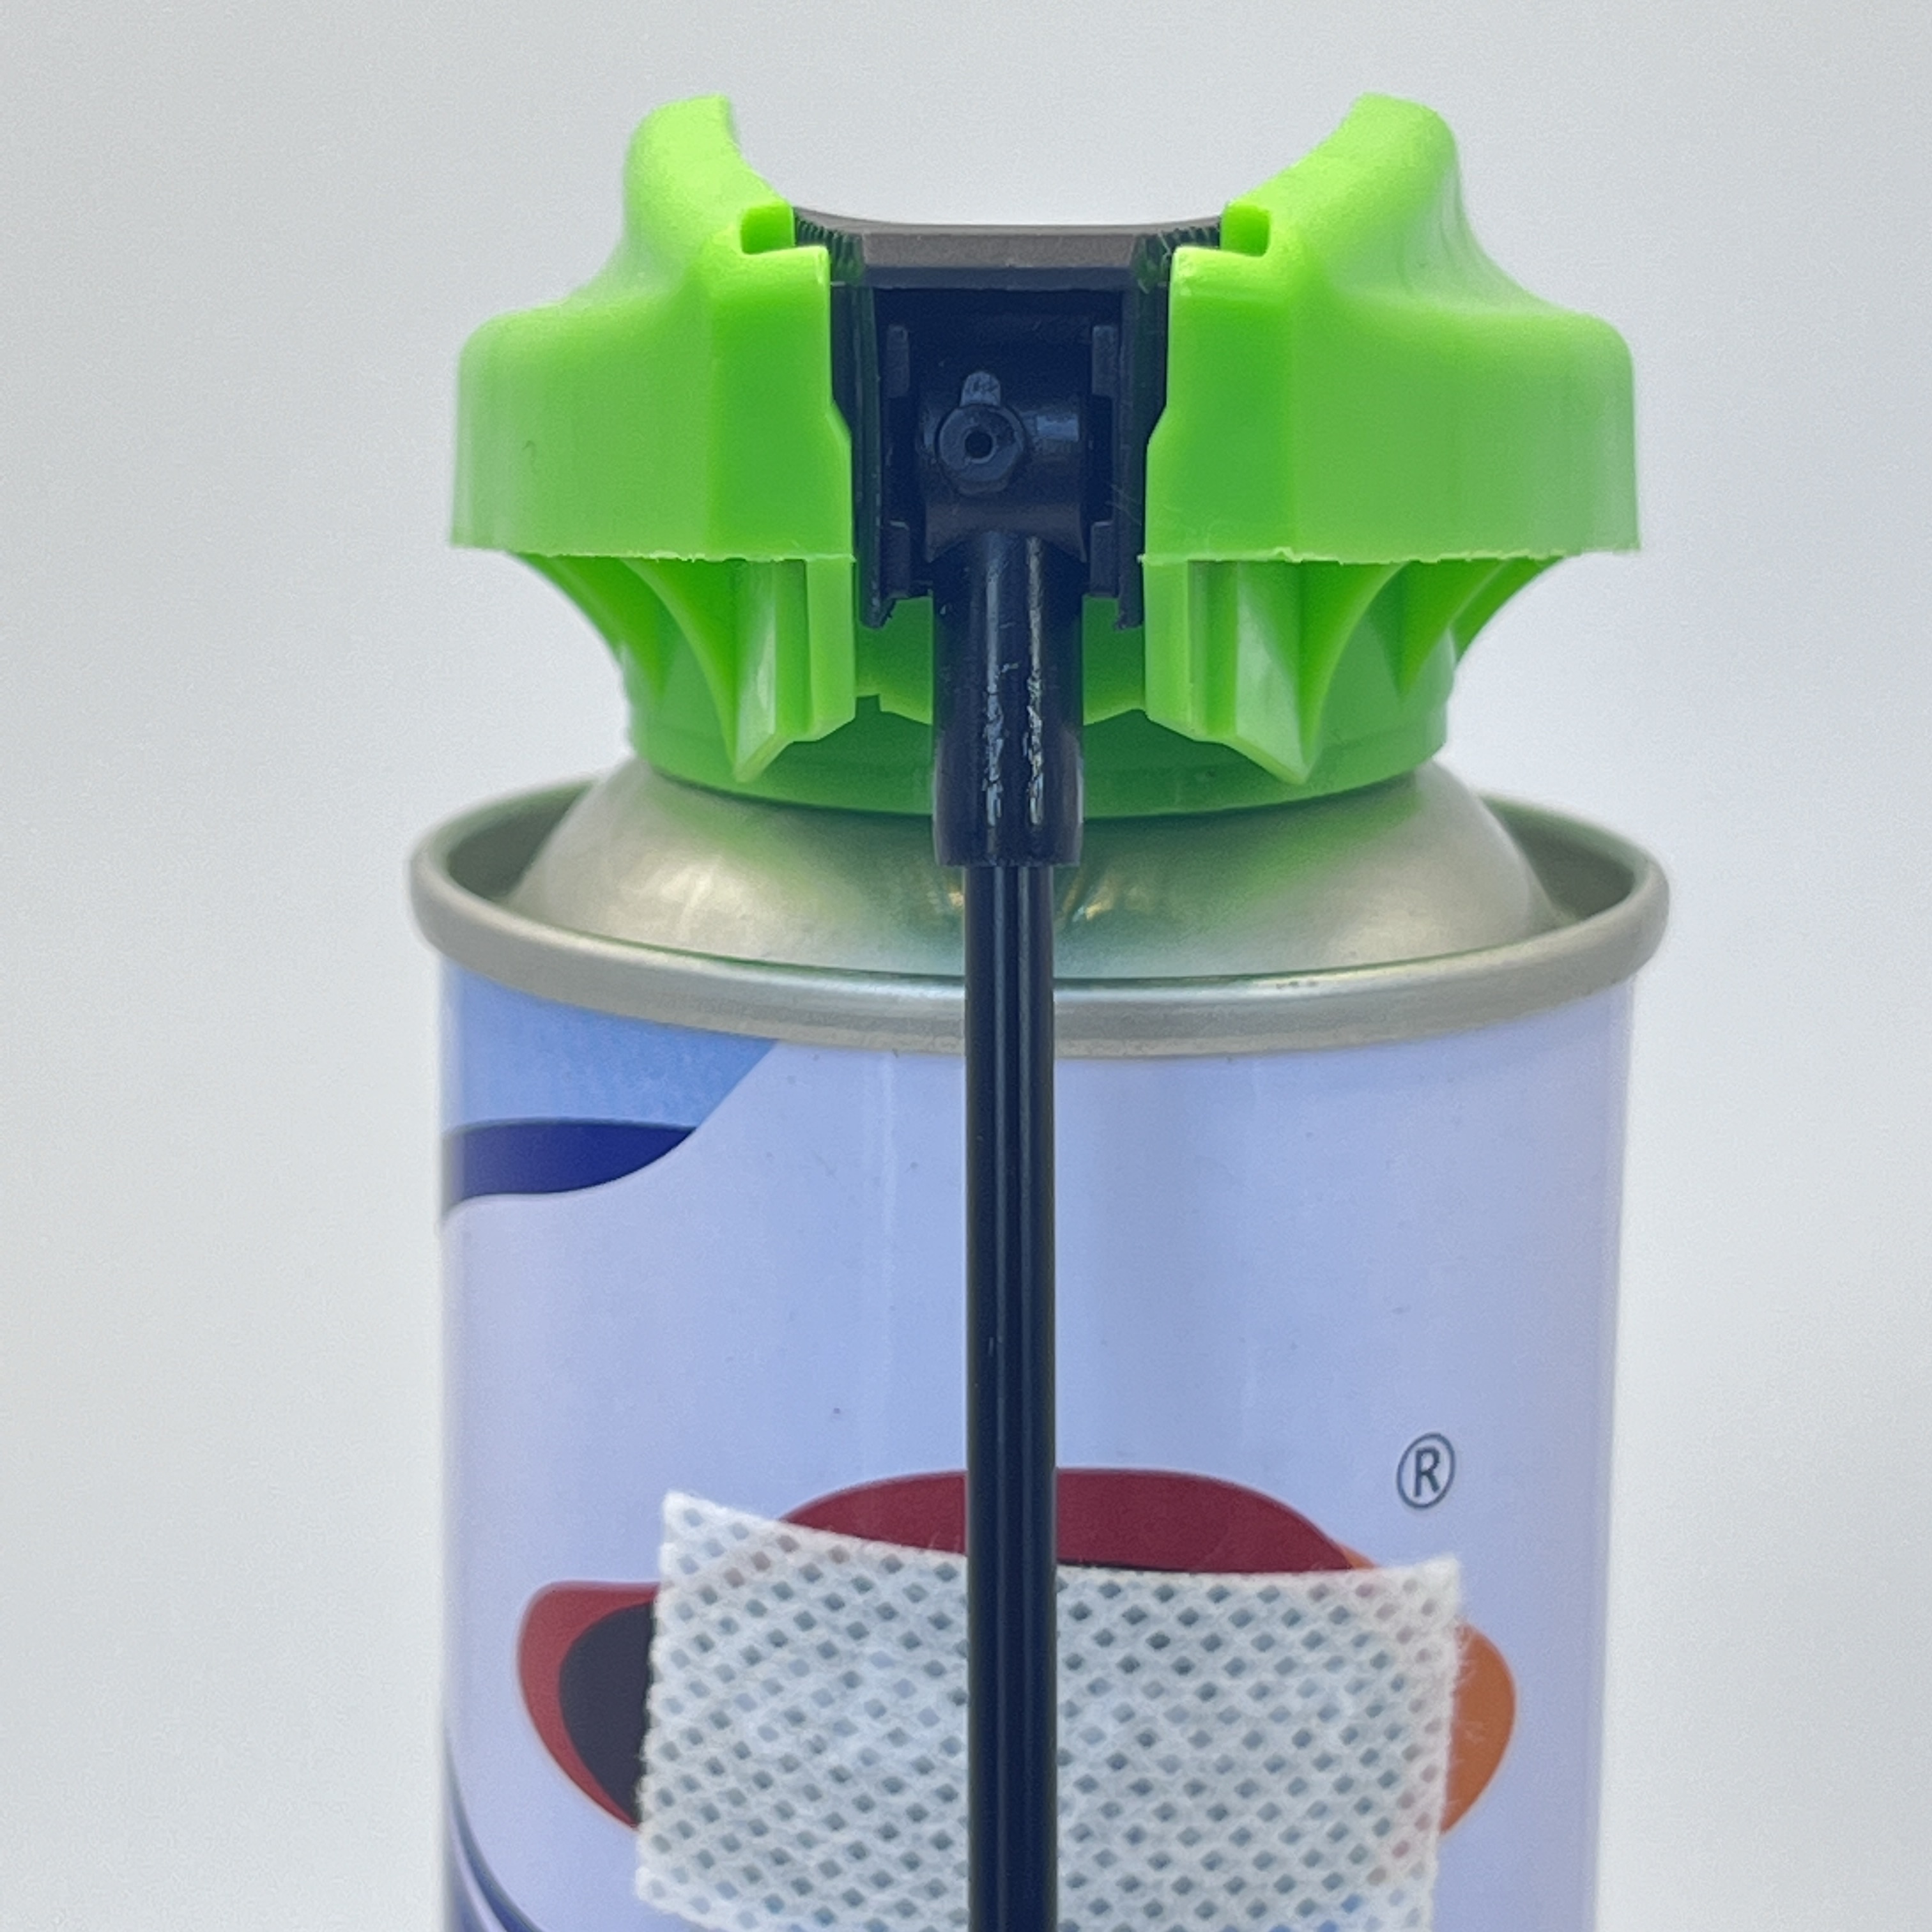 Allsidig aerosolsprøyte med sammenleggbart rør og lås - flerbruksløsning for rengjøring og vedlikehold